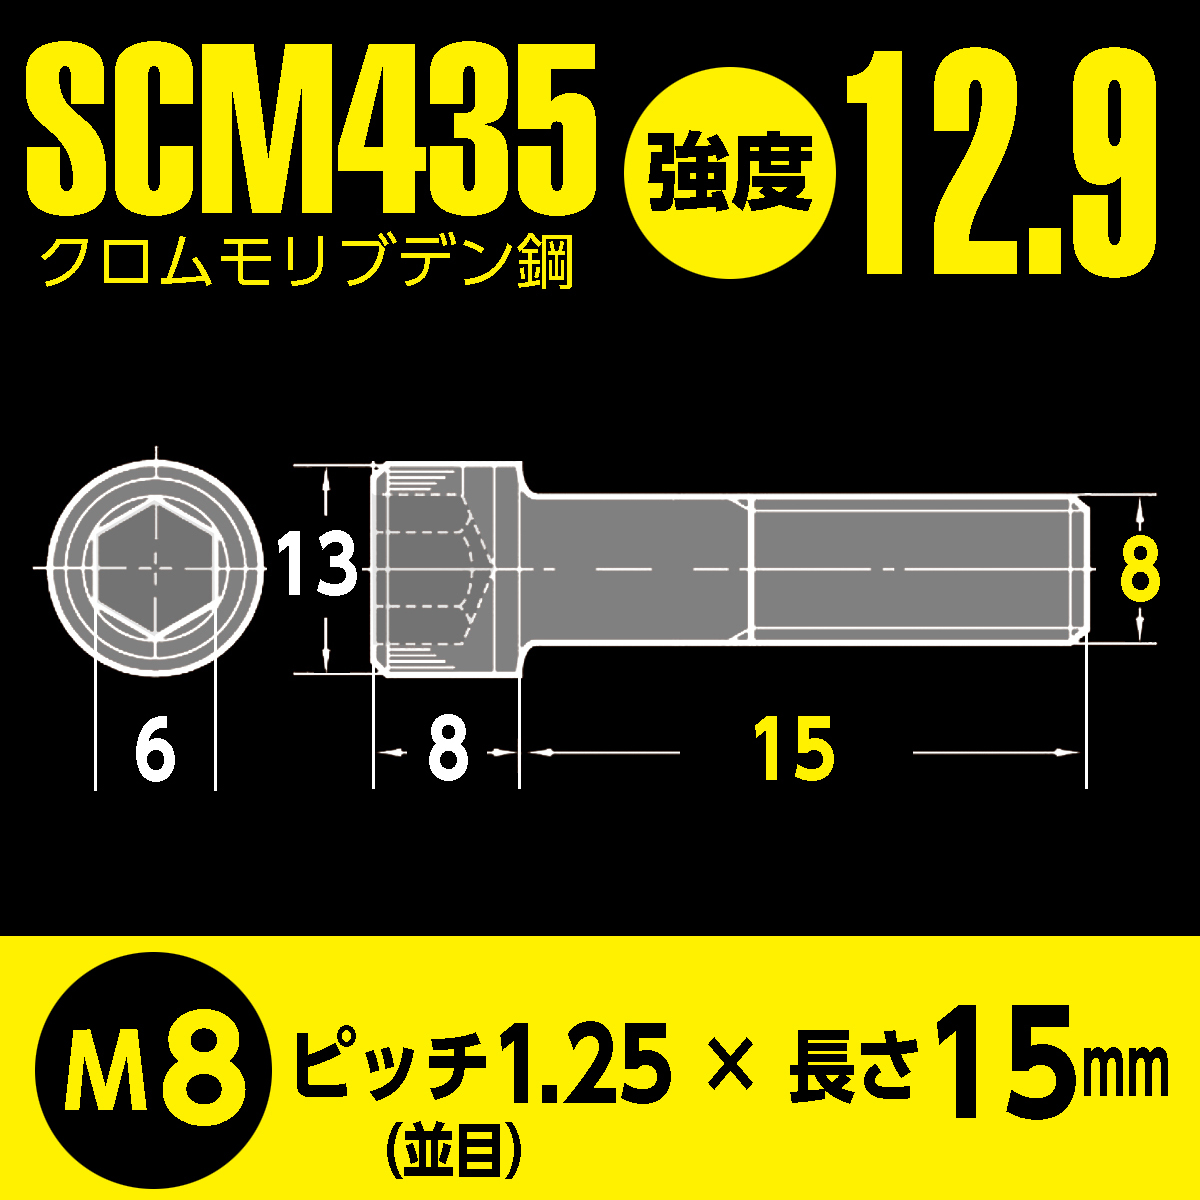 バイク用 鉄 SCM435／BFA特殊防錆コート 六角穴付 高強度 キャップボルト M8 x 長さ15mm 2本入 強度12.9 マットブラック超防錆加工_画像6